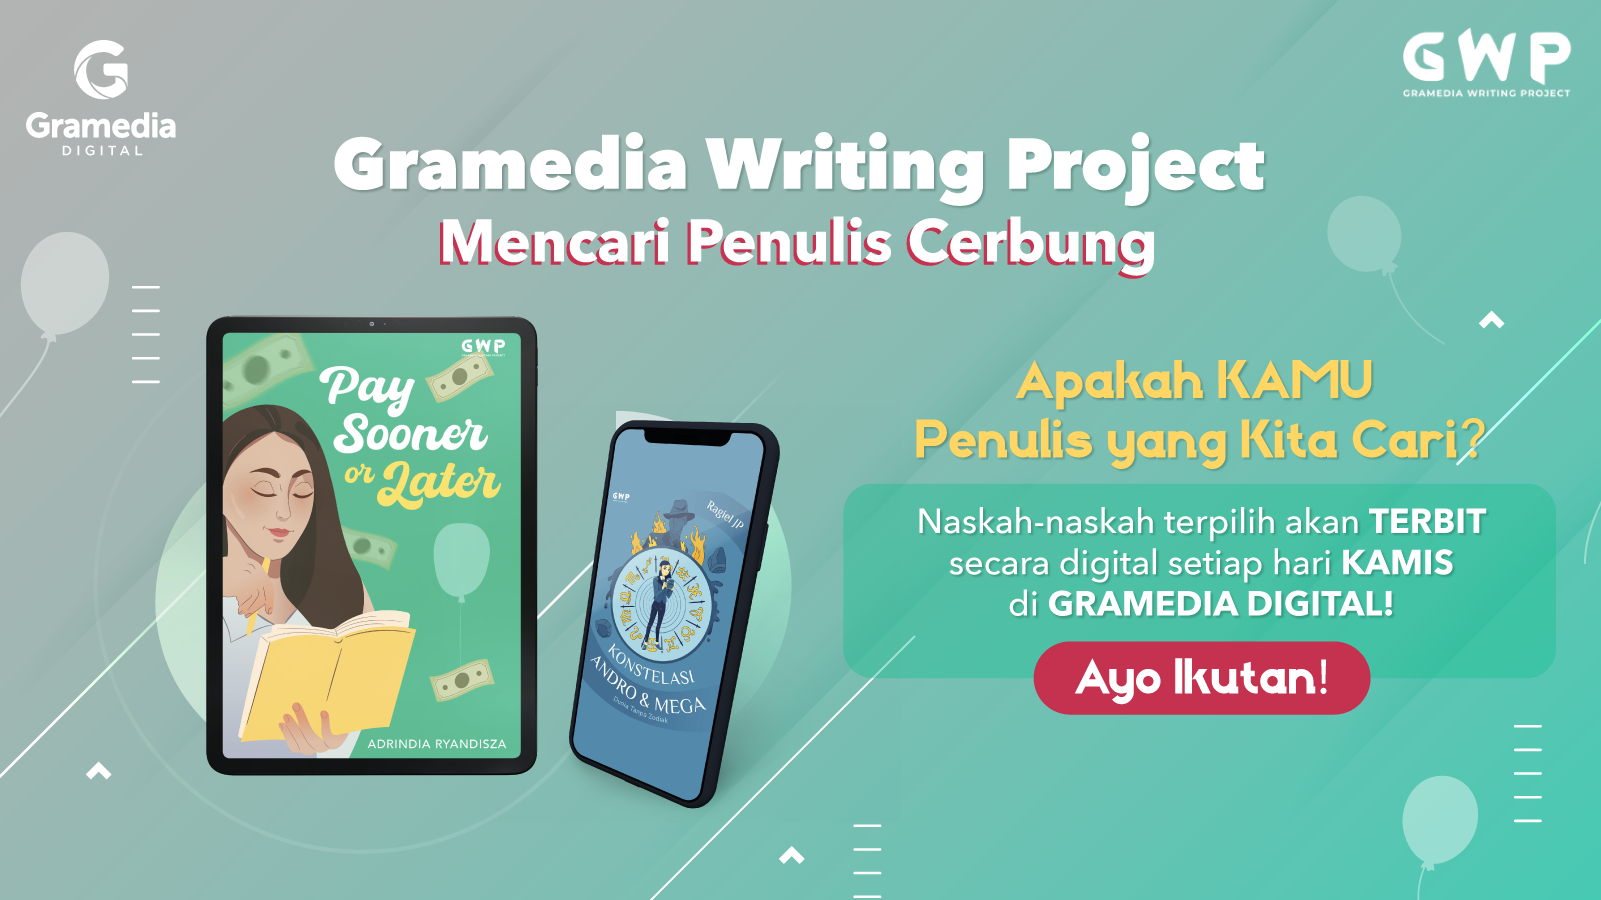 Gramedia Writing Project Mencari Penulis Cerbung!